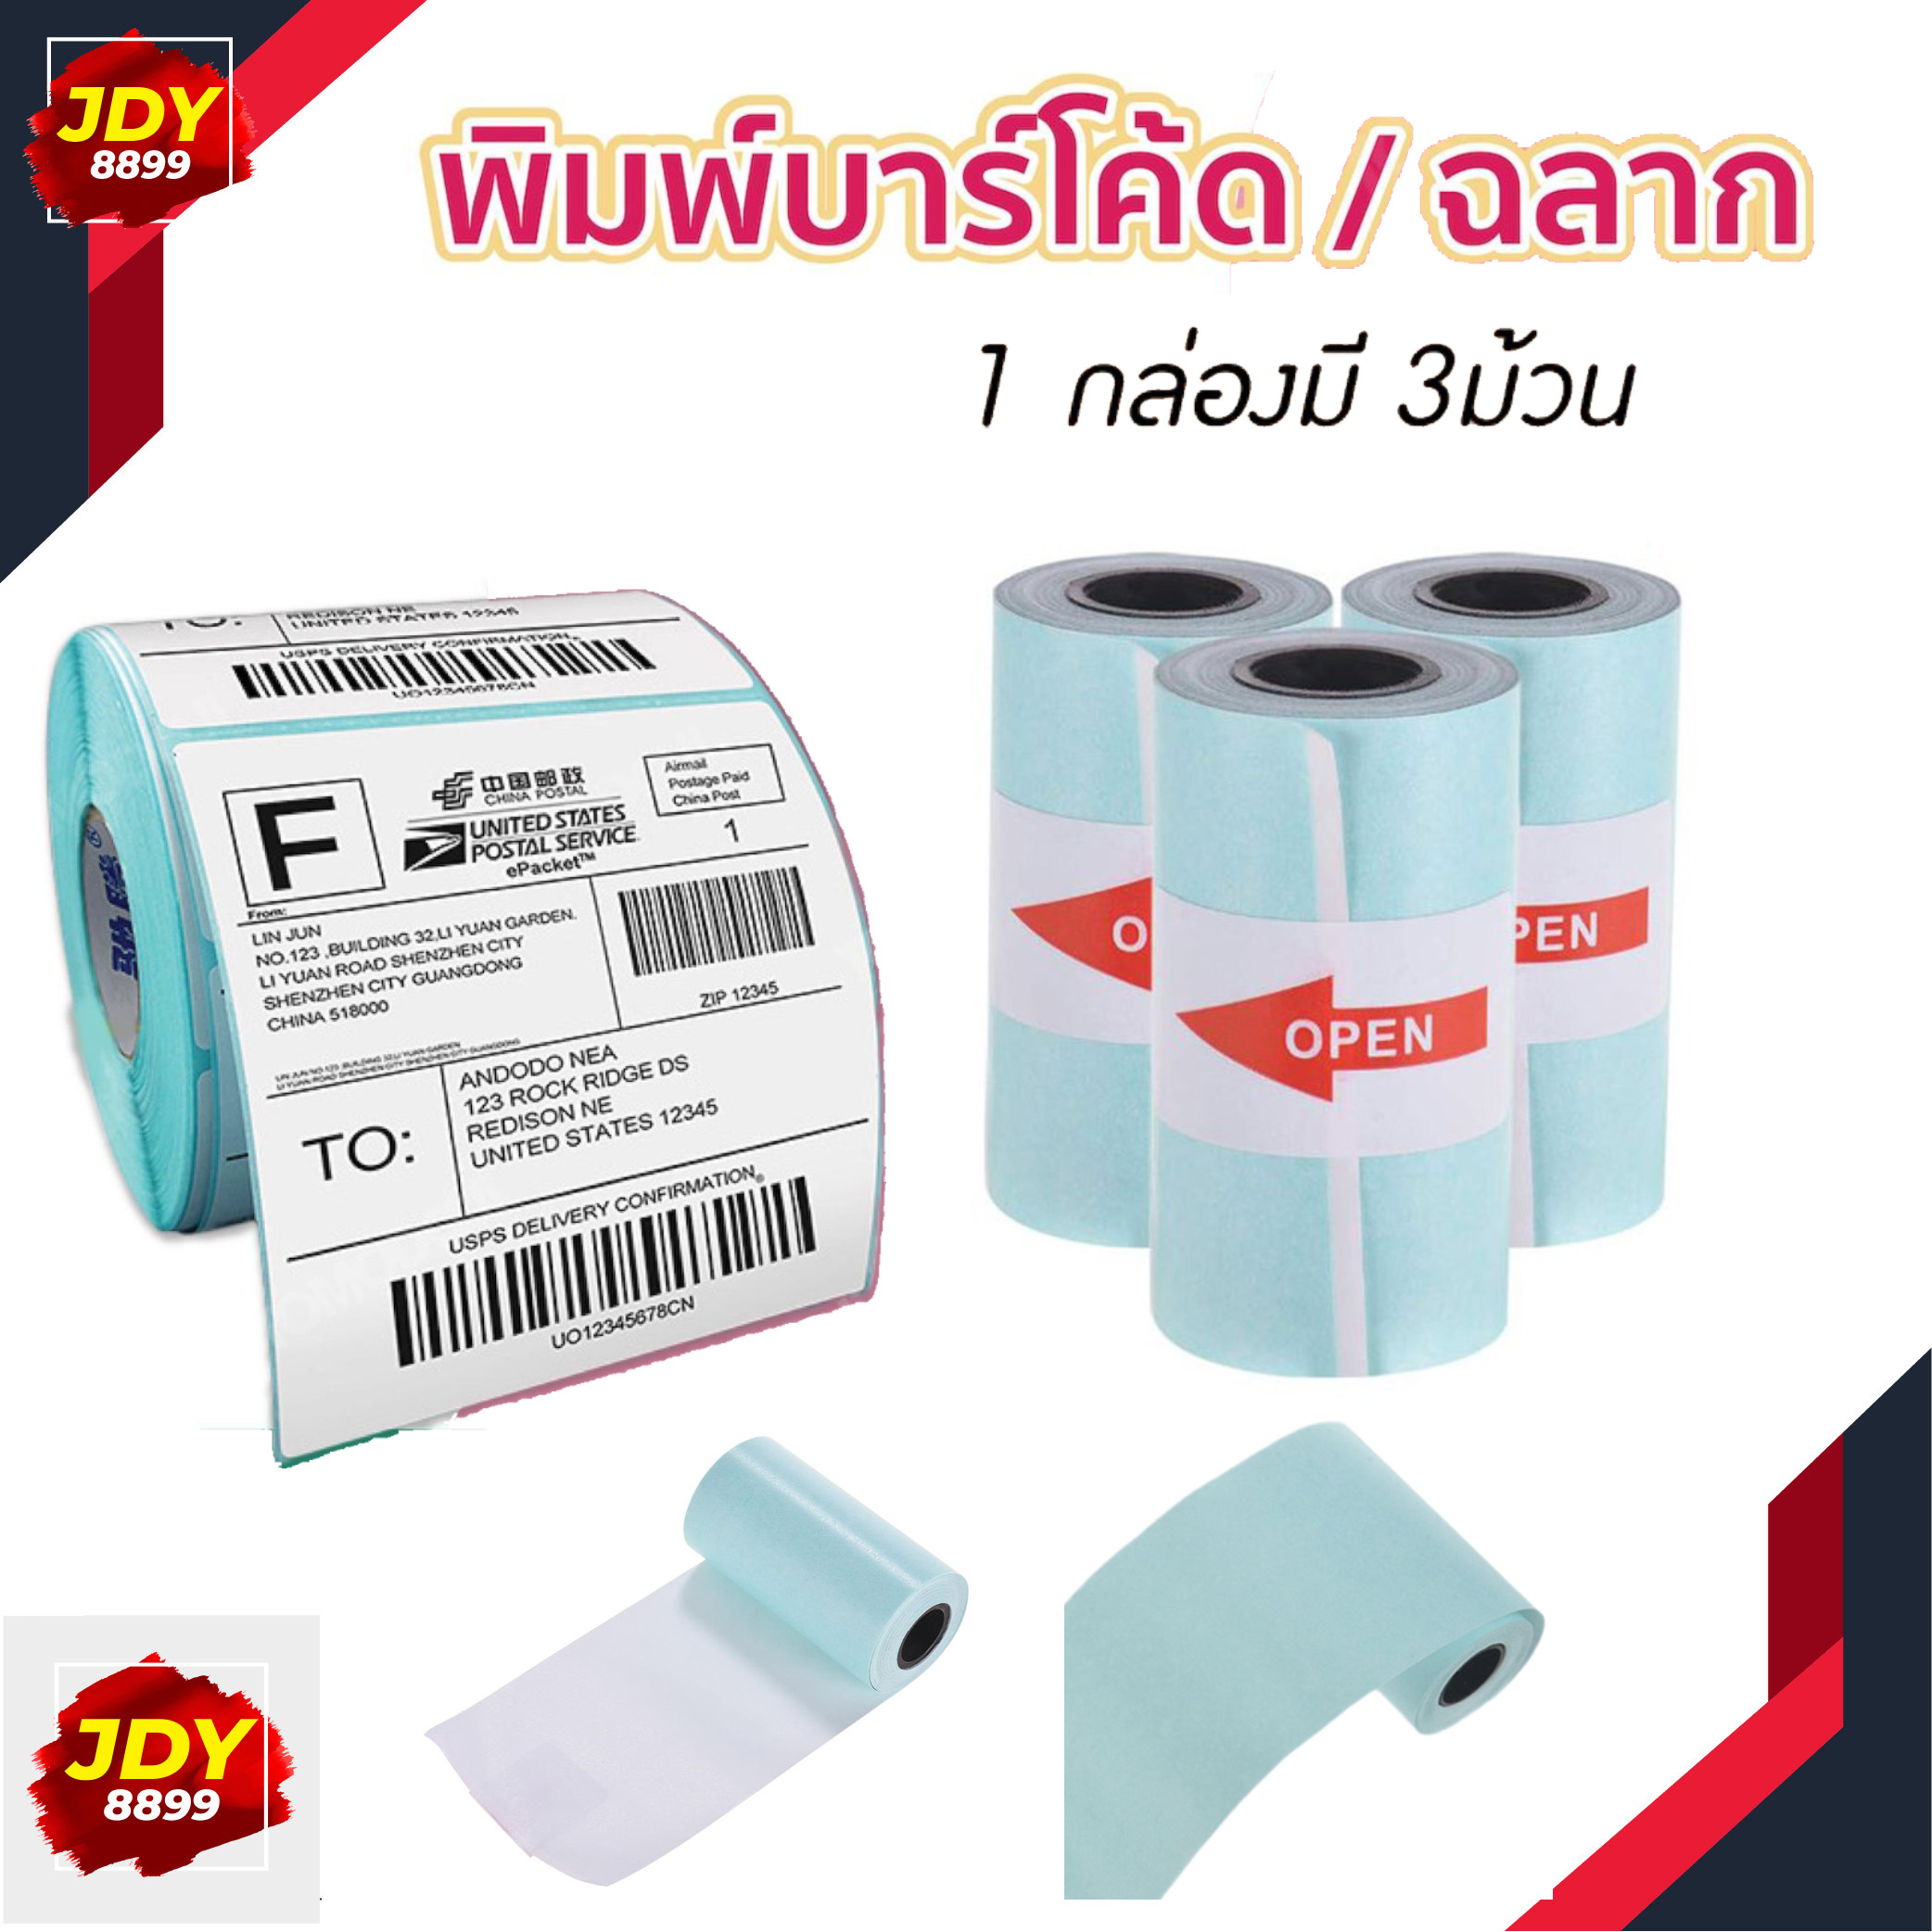 กระดาษสติกเกอร์ แพ็ค3ม้วน กระดาษปริ้น Paperang Sticker Paperang/Paperoll White Paper กระดาษความร้อน กระดาษ JDY8899